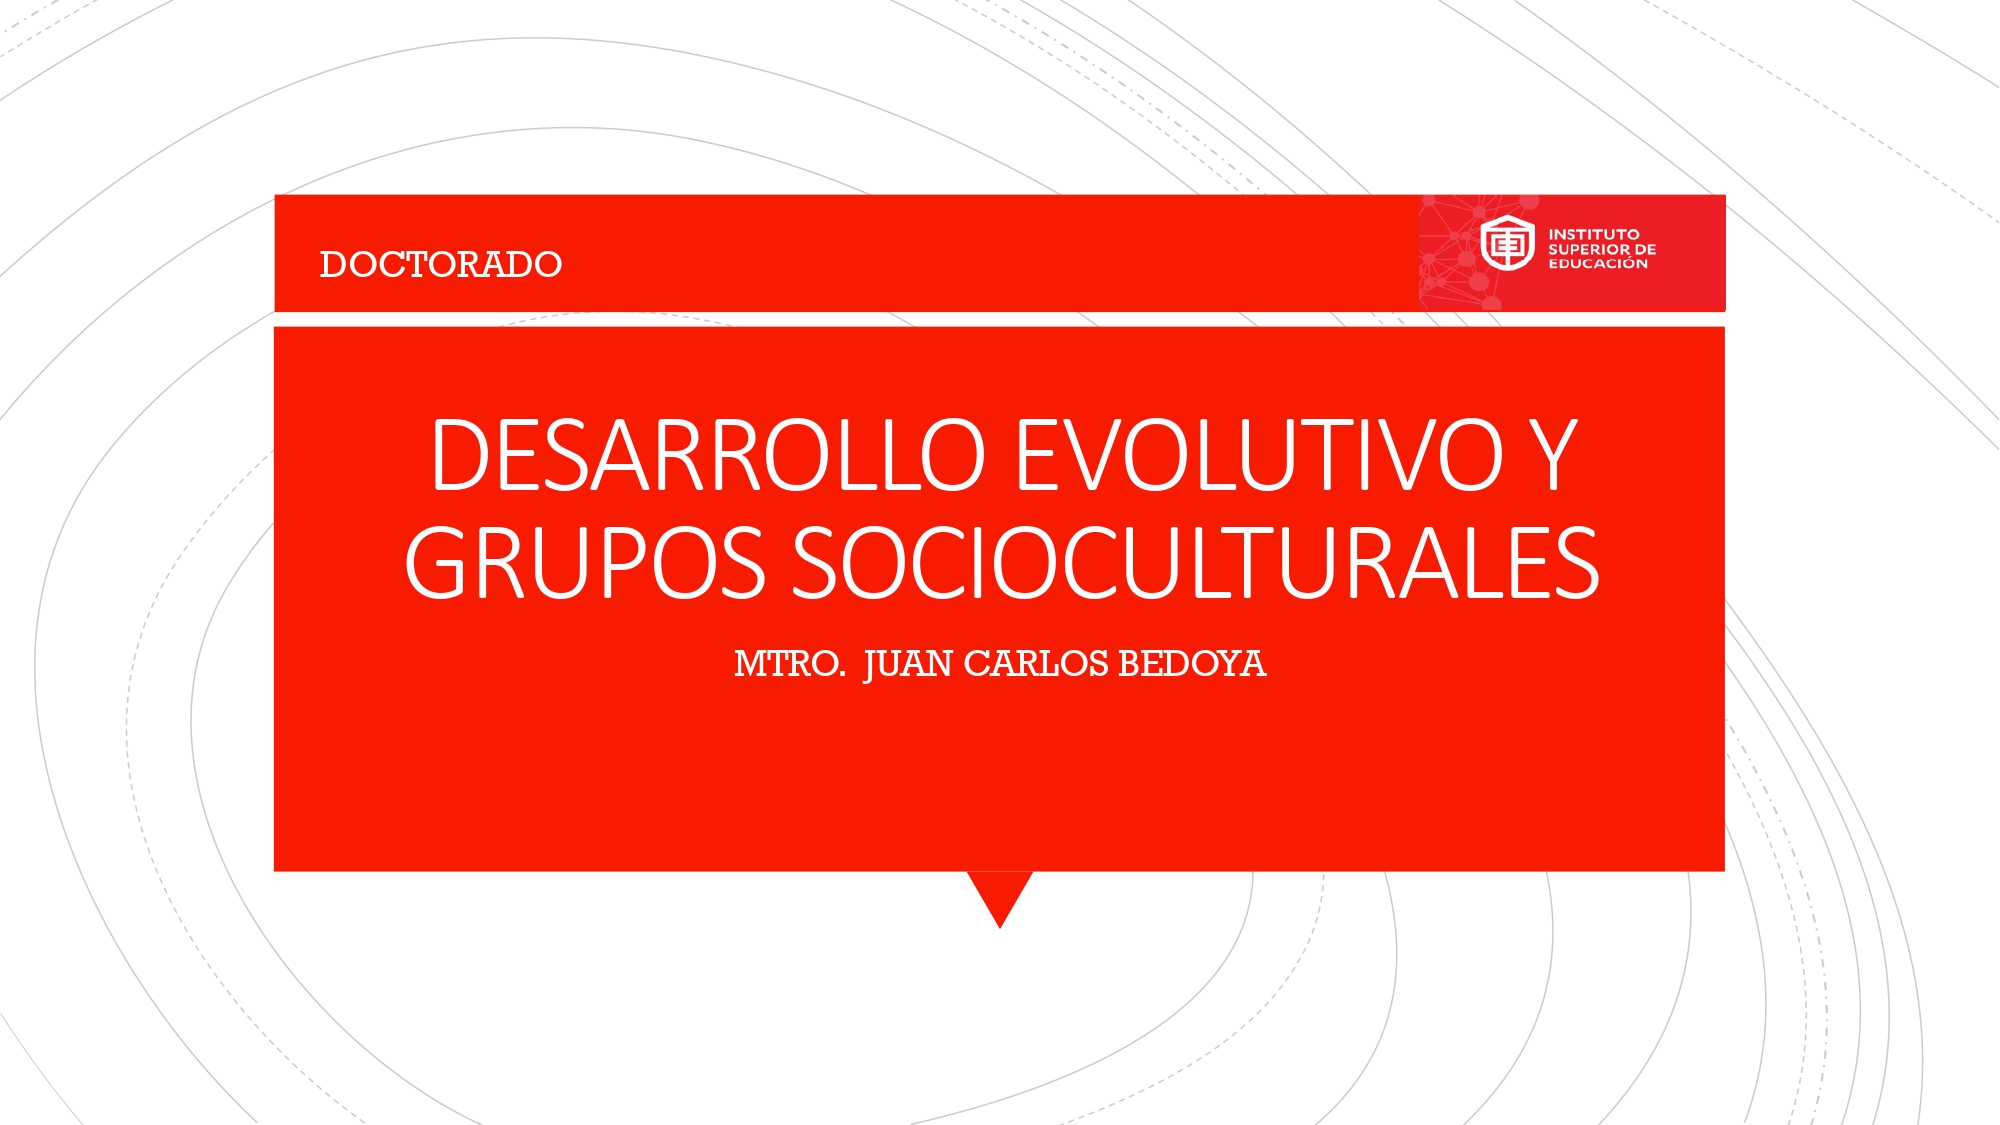 2B Desarrollo evolutivo y grupos socioculturales